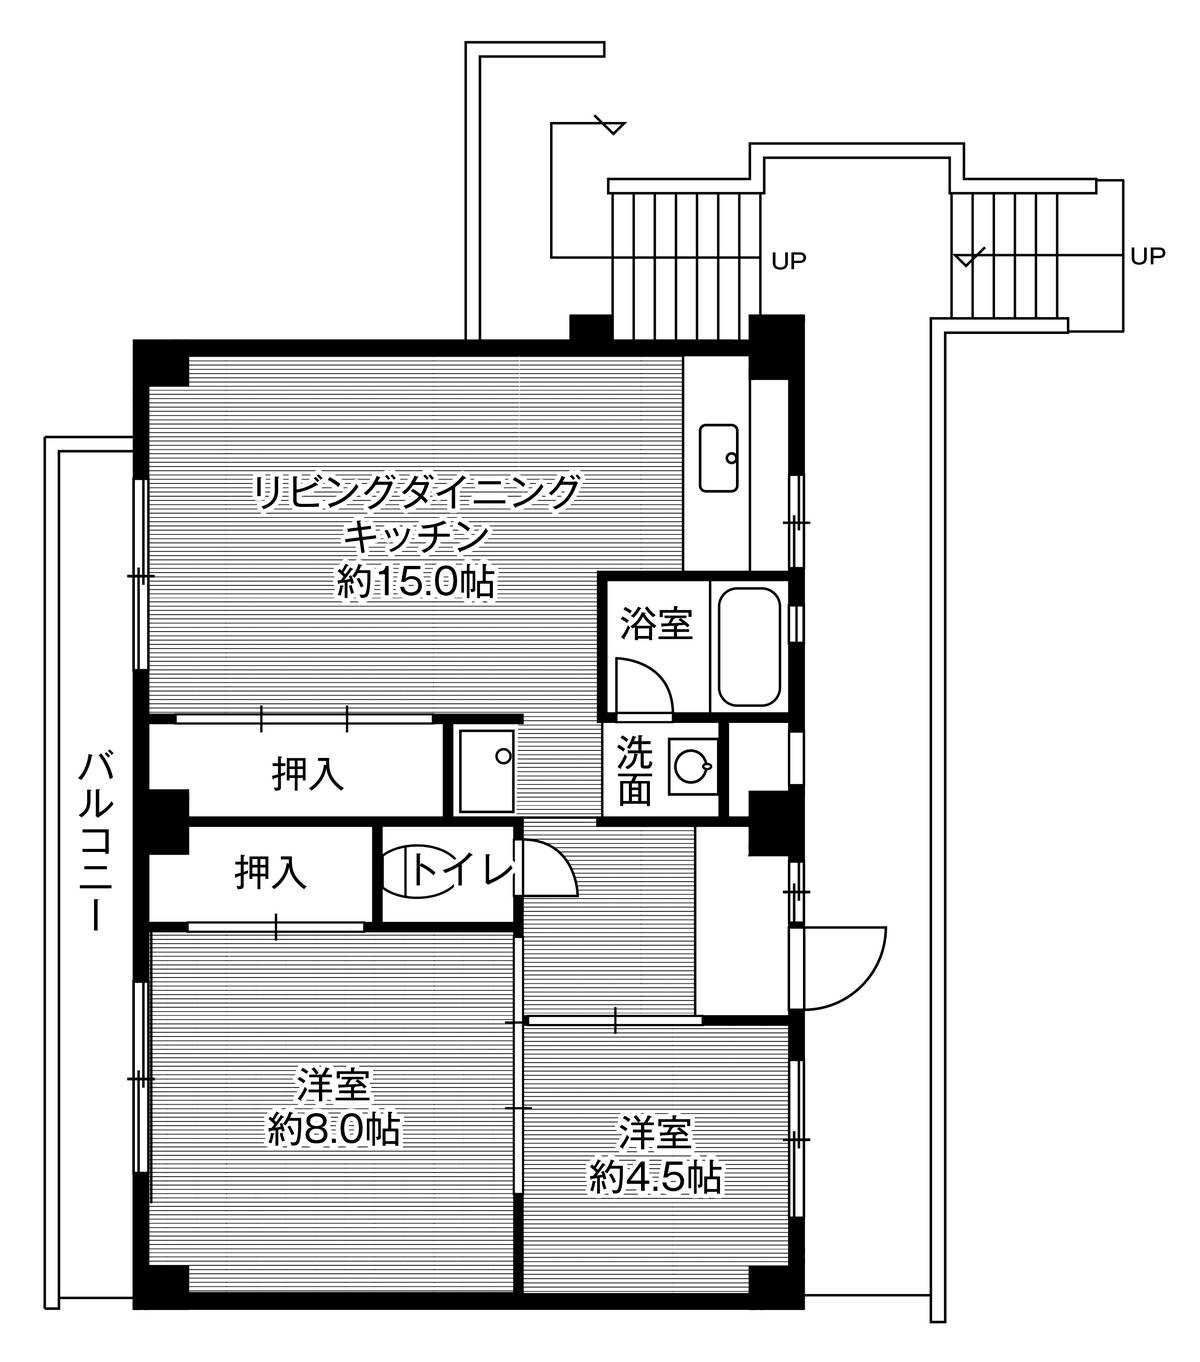 Sơ đồ phòng 3DK của Village House Tsuda ở Toyohashi-shi